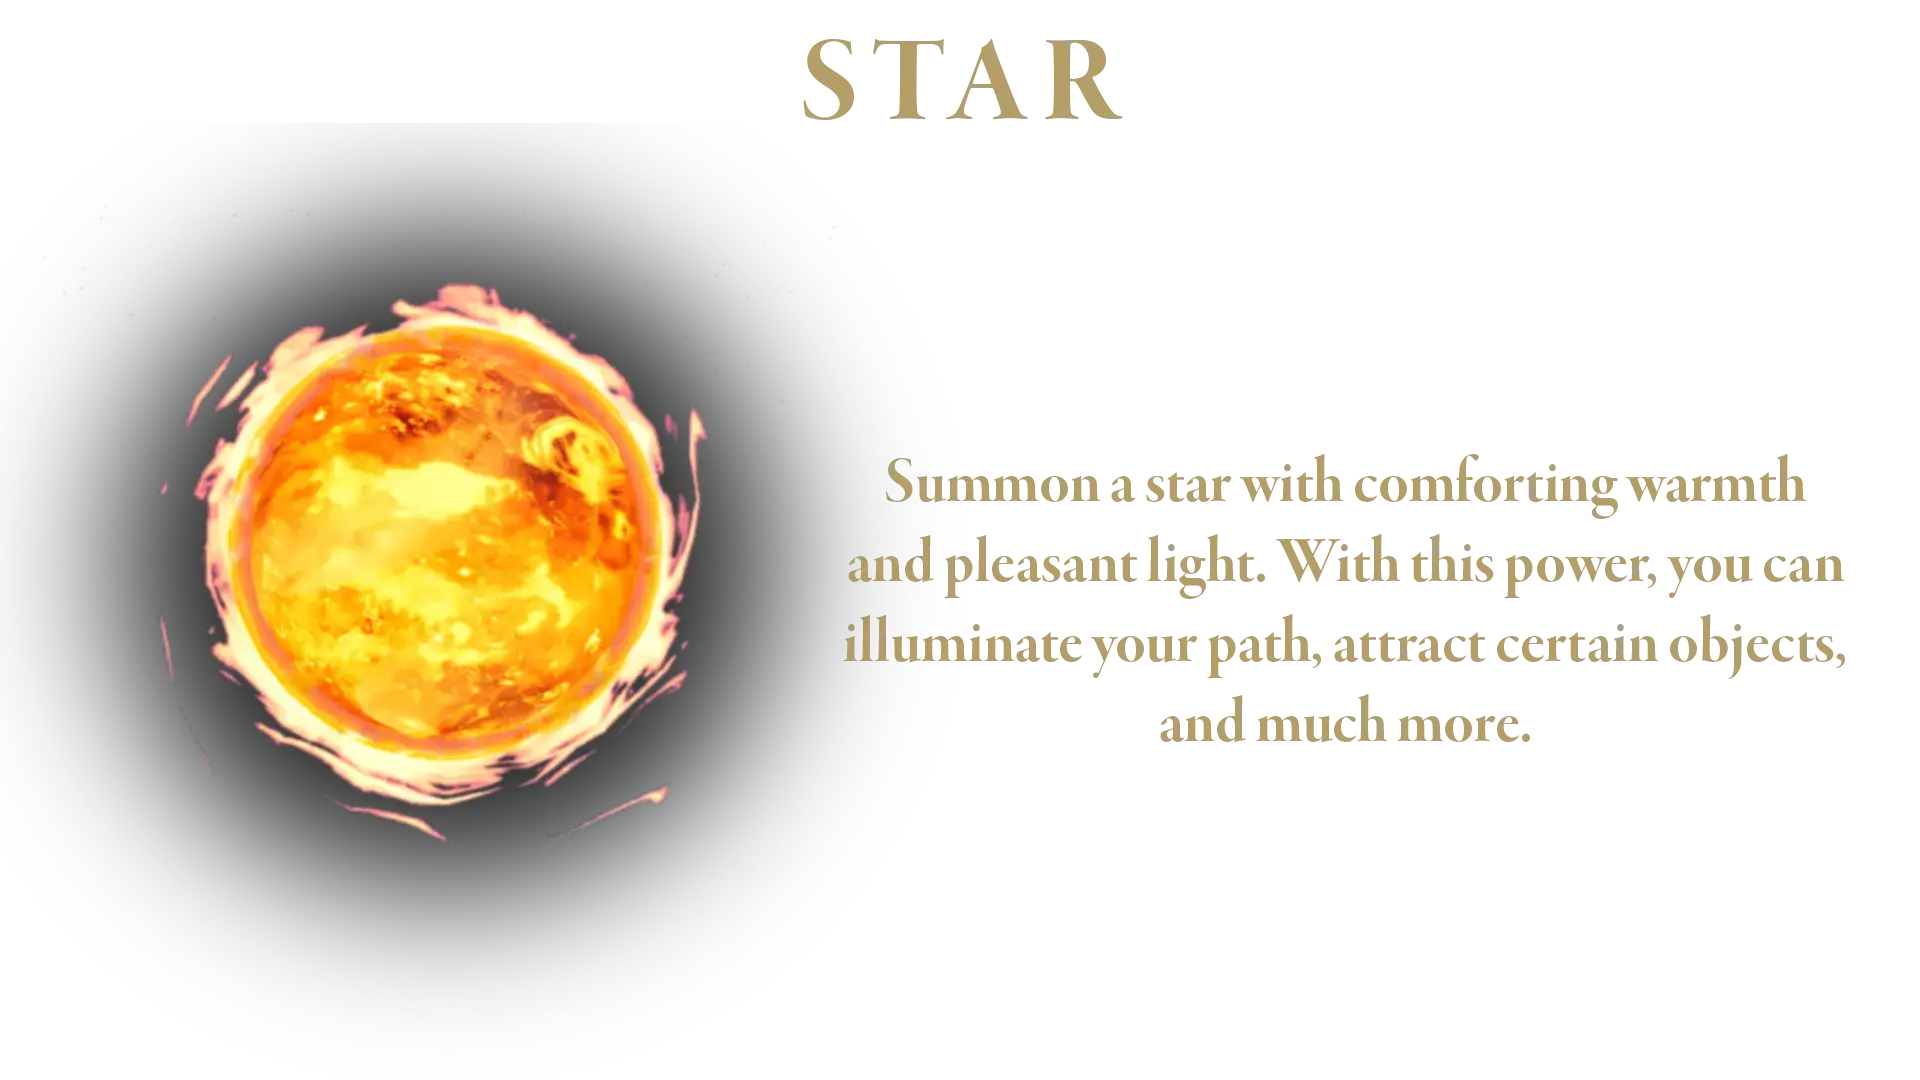 Small star spell description